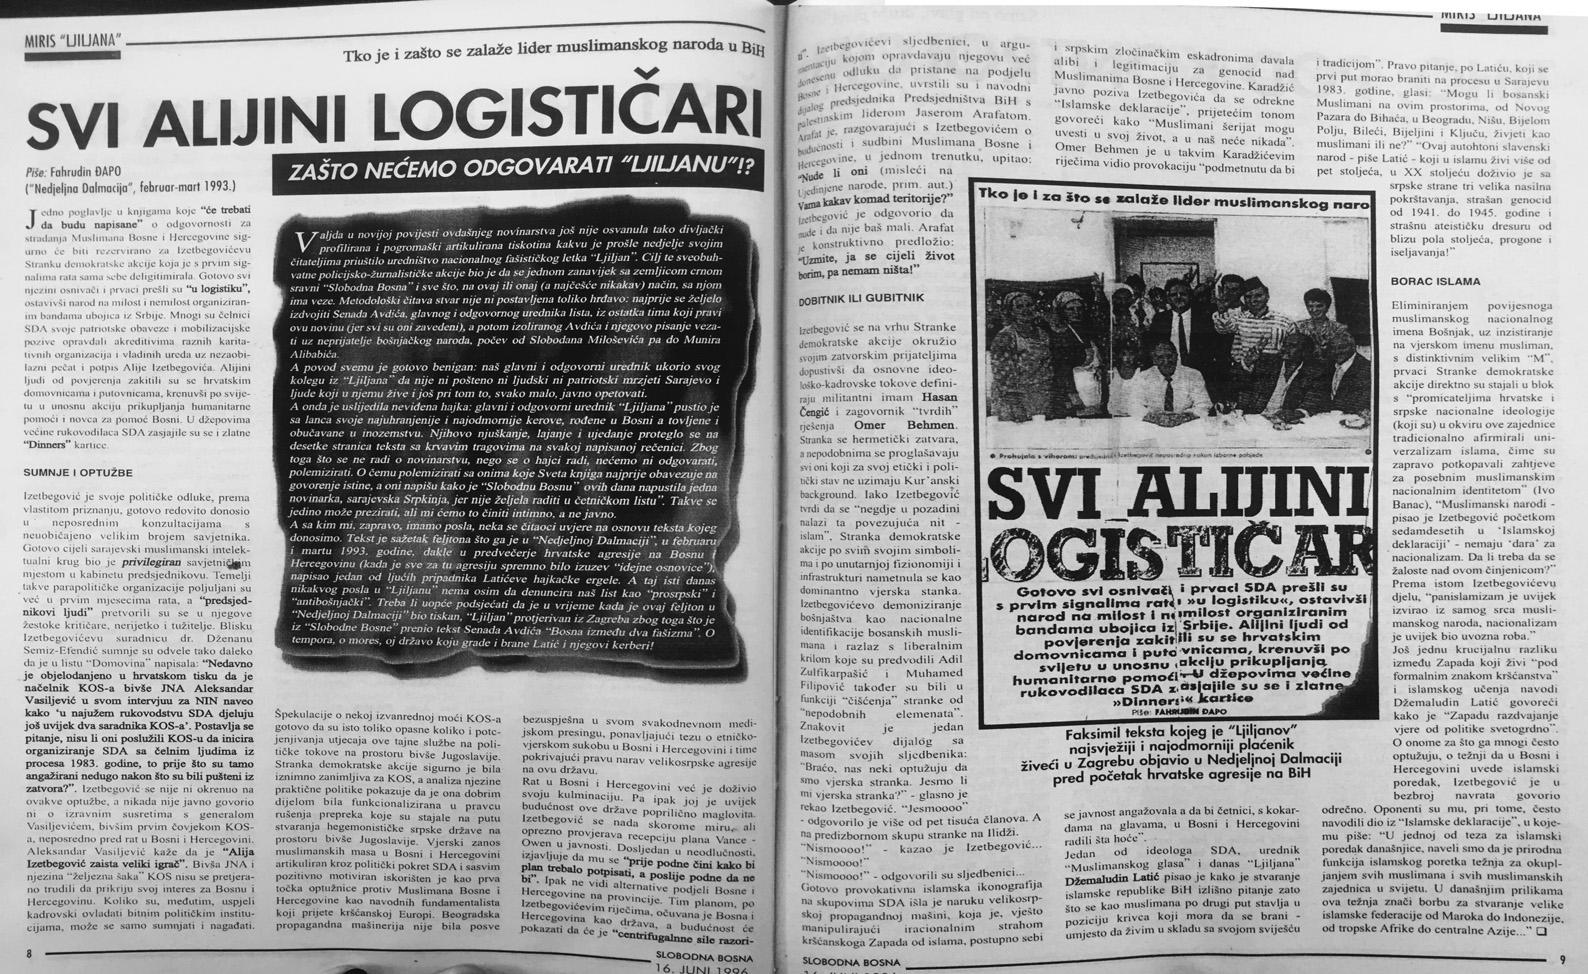 Faksimil teksta iz “Slobodne Bosne” od 16. juna 1996. godine, gdje je donesen i faksimil teksta koji je tadašnji “Ljiljanov” novinar, dok je živio u Zagrebu, objavio u “Nedjeljnoj Dalmaciji” 1993. godine - Avaz